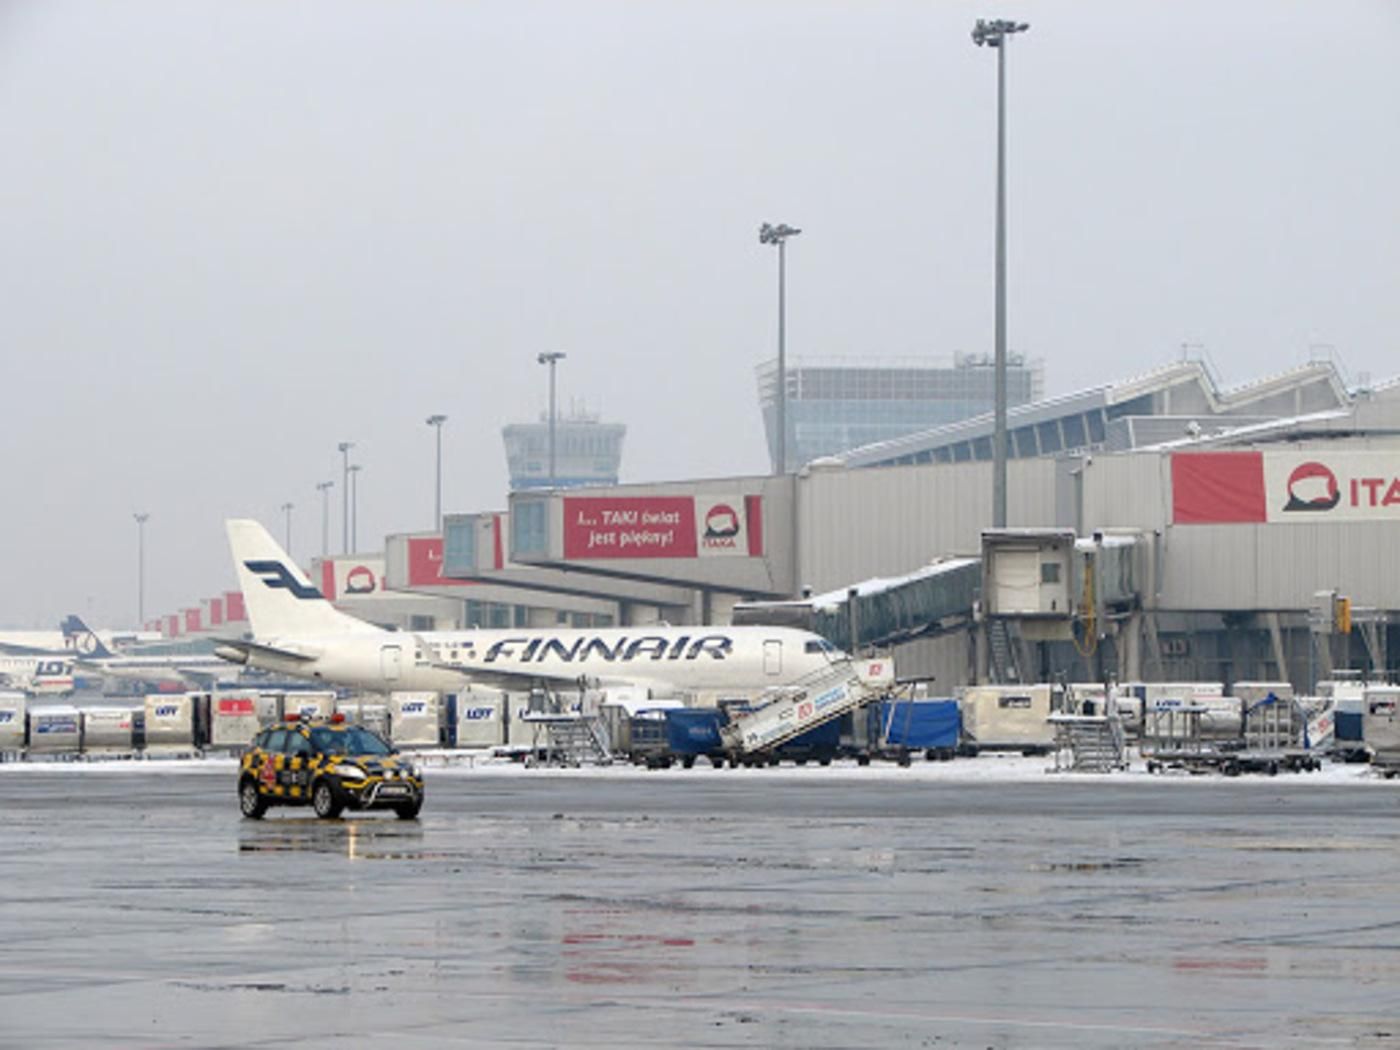 Объявили о минировании: в аэропорту Варшавы эвакуировали самолет